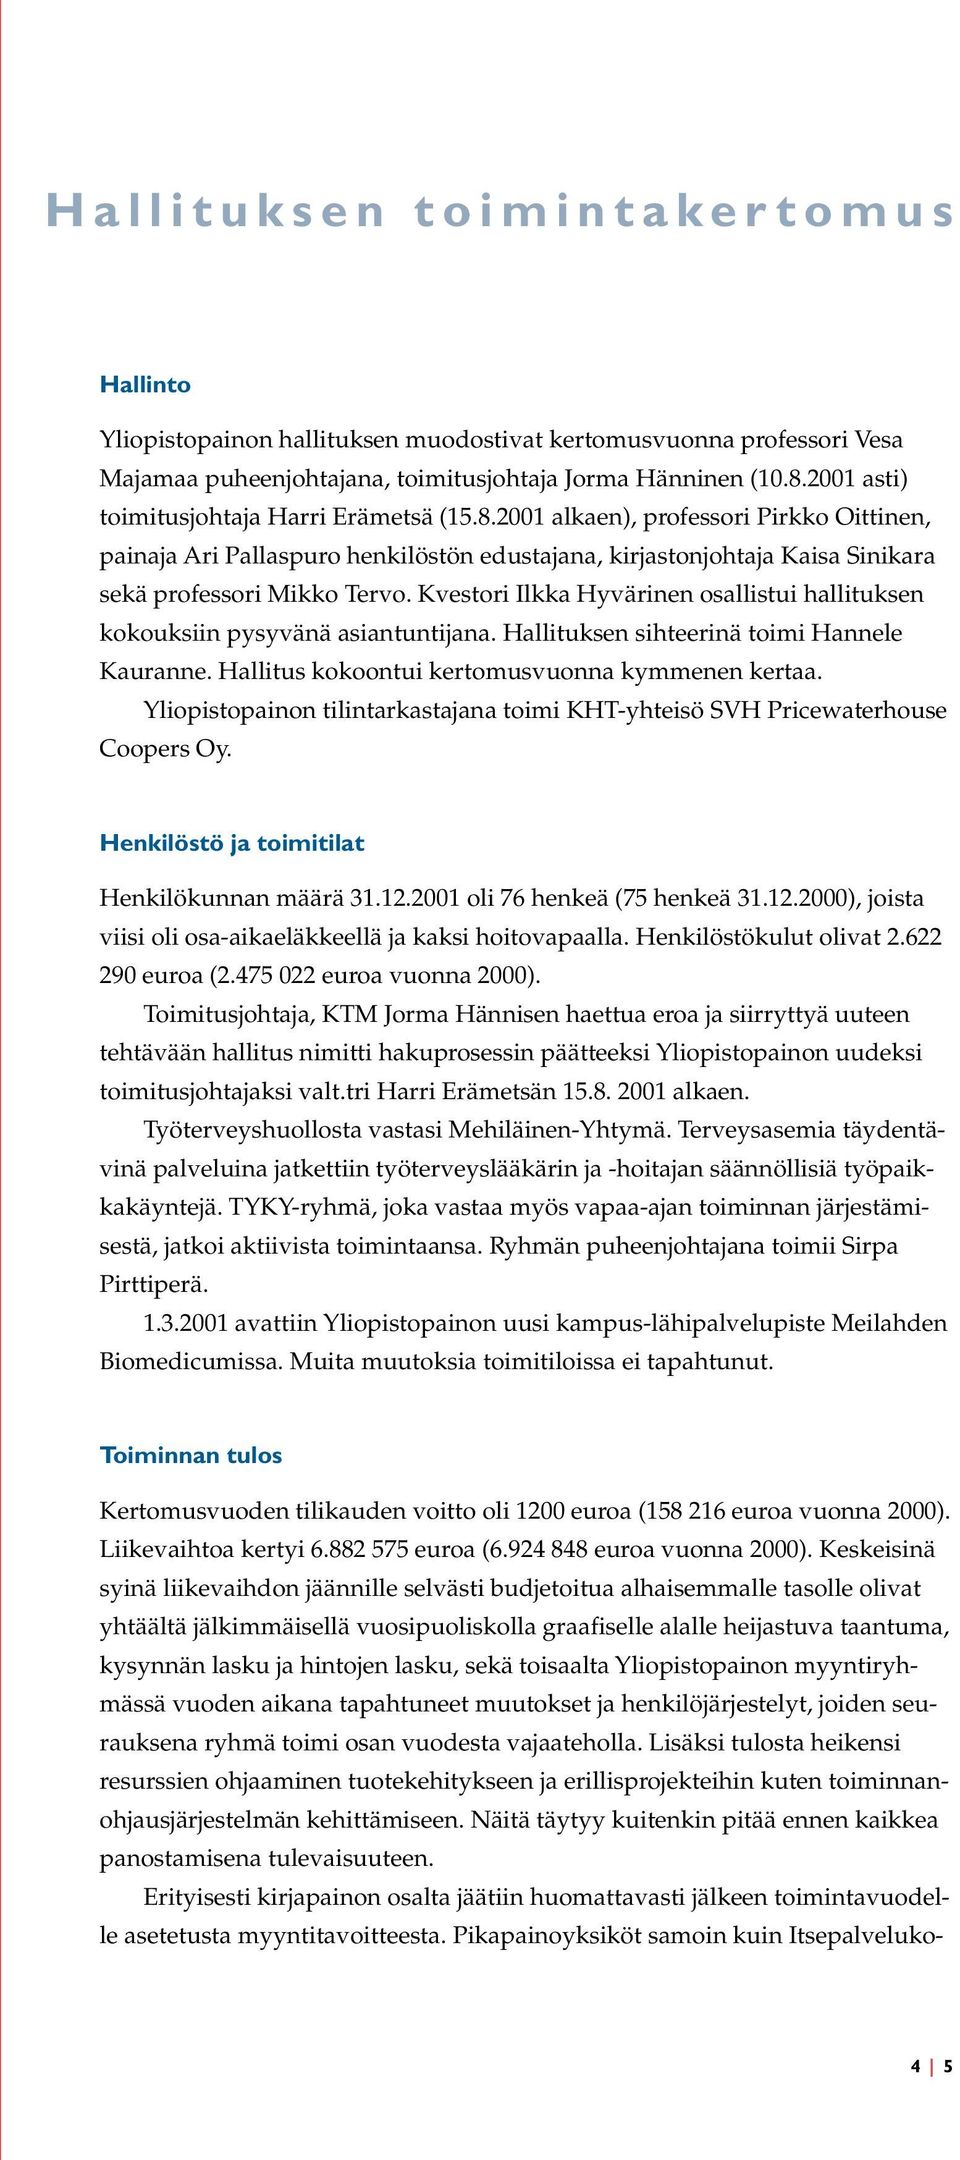 Kvestori Ilkka Hyvärinen osallistui hallituksen kokouksiin pysyvänä asiantuntijana. Hallituksen sihteerinä toimi Hannele Kauranne. Hallitus kokoontui kertomusvuonna kymmenen kertaa.